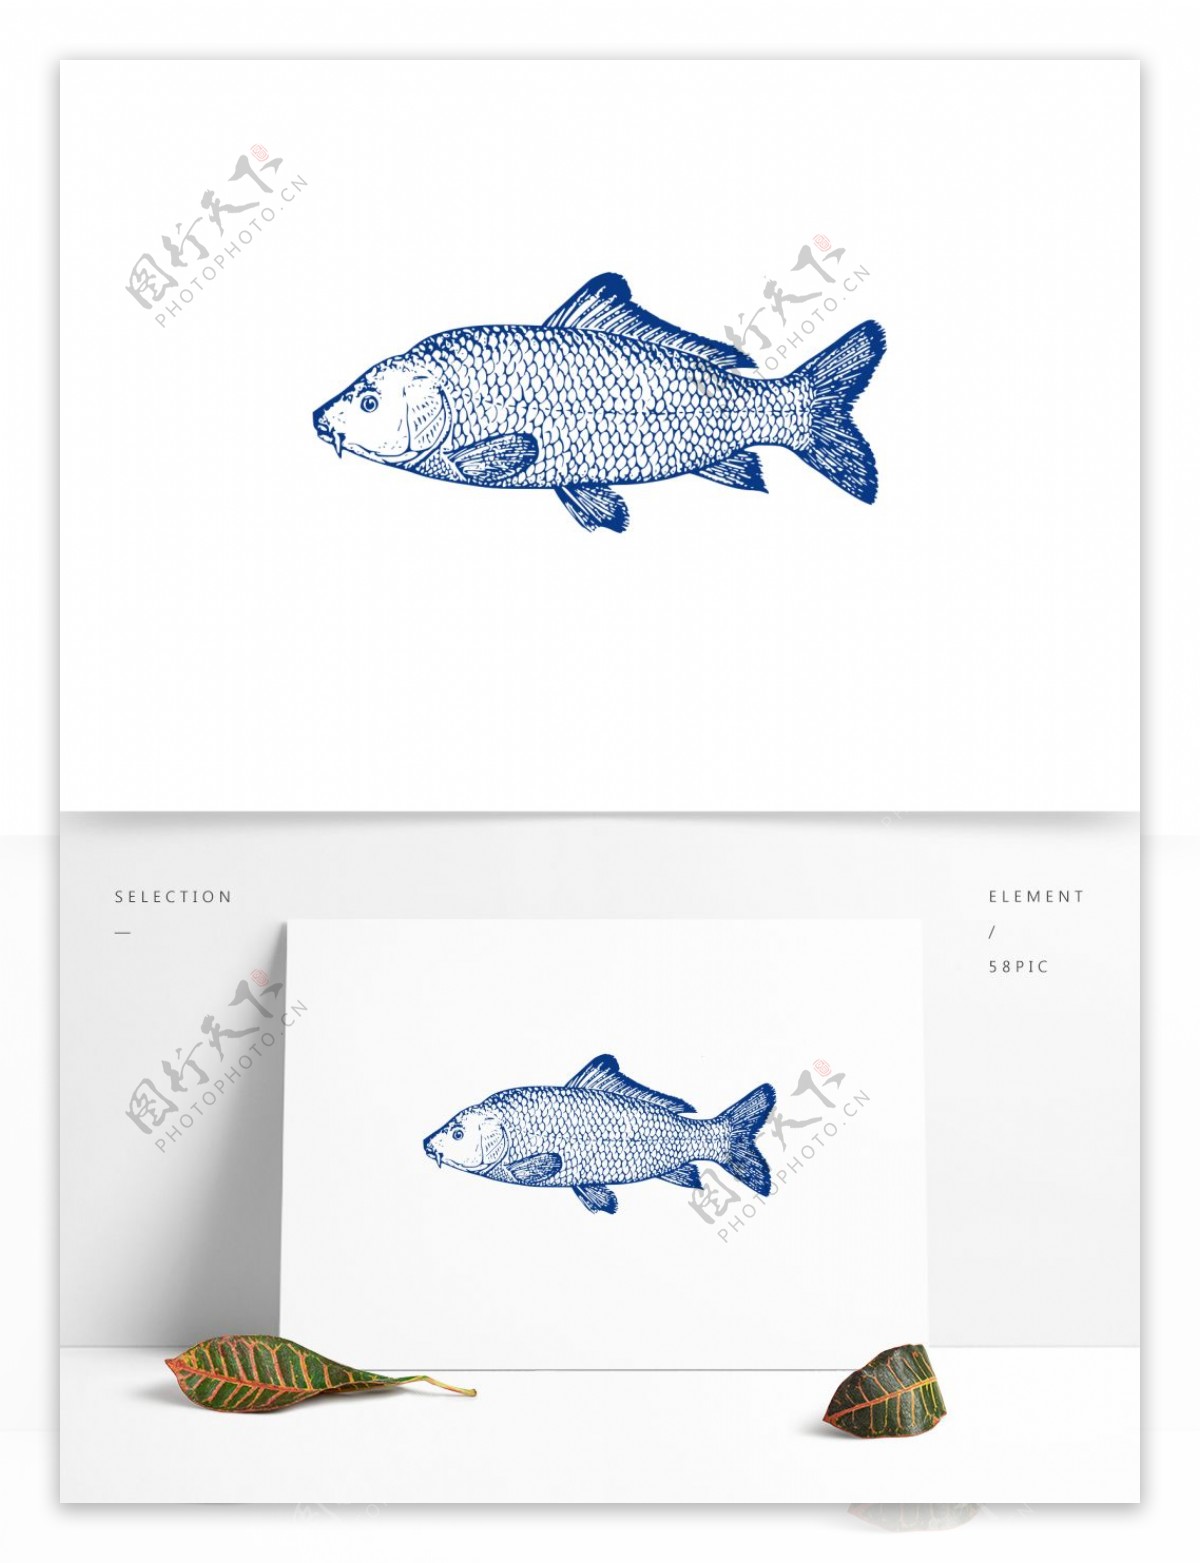 手绘蓝色鱼动物素材